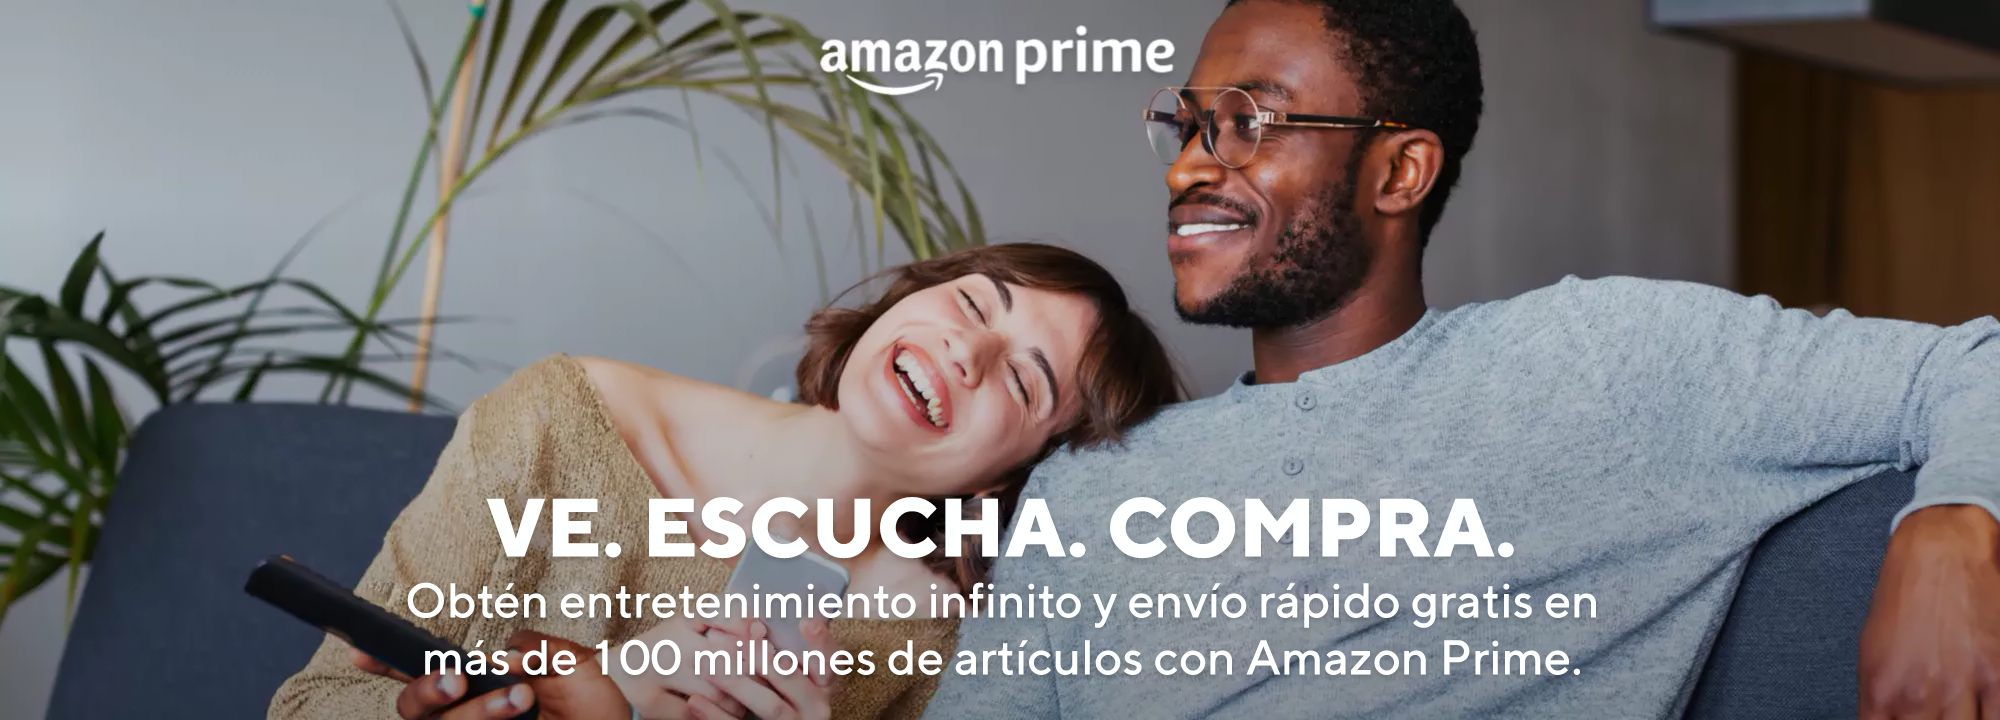 Amazon Prime Couple Indoors